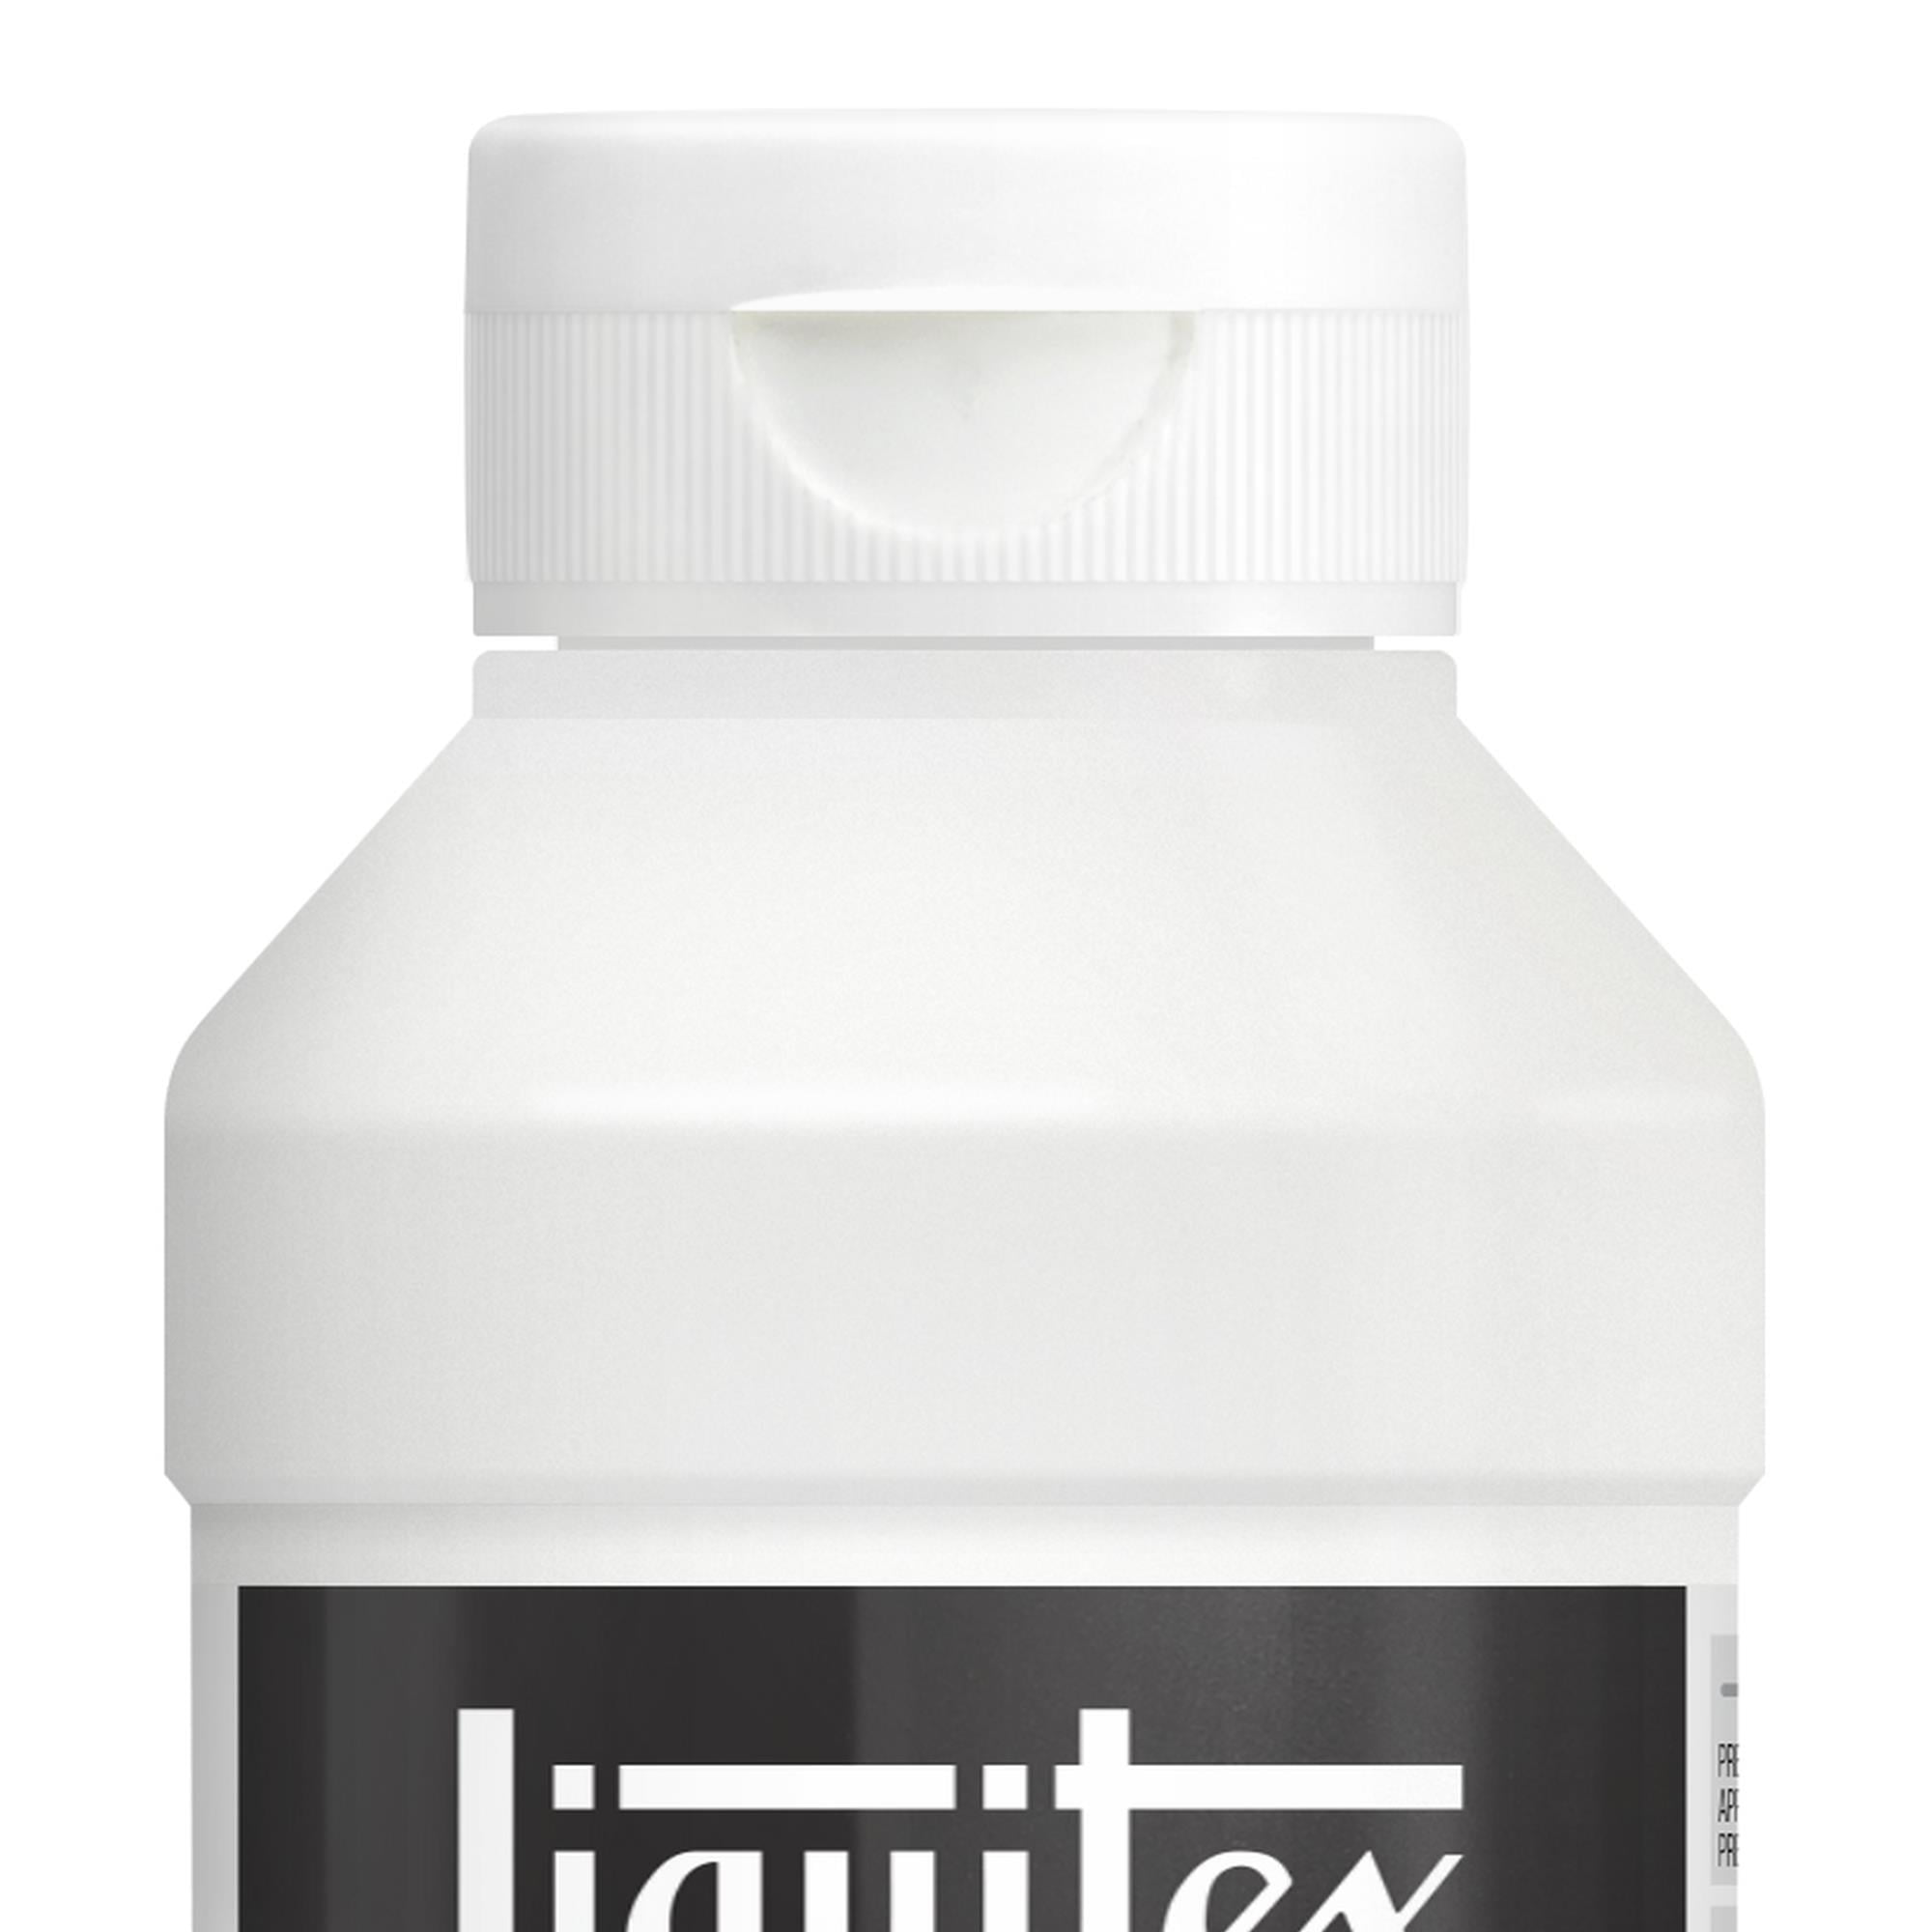 Liquitex Medium Matte Pouring - 16 oz